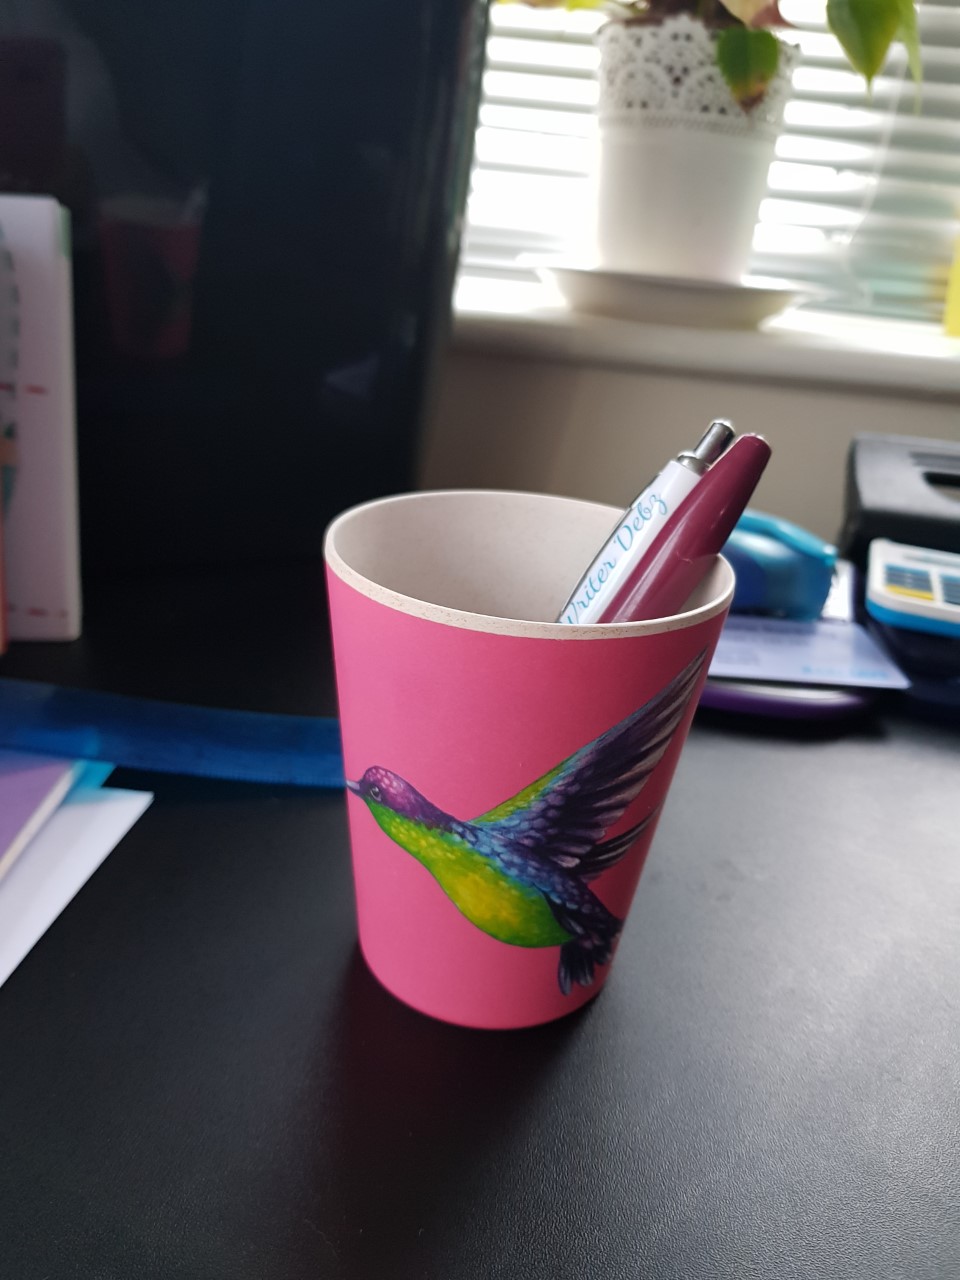 Humming bird pen pot